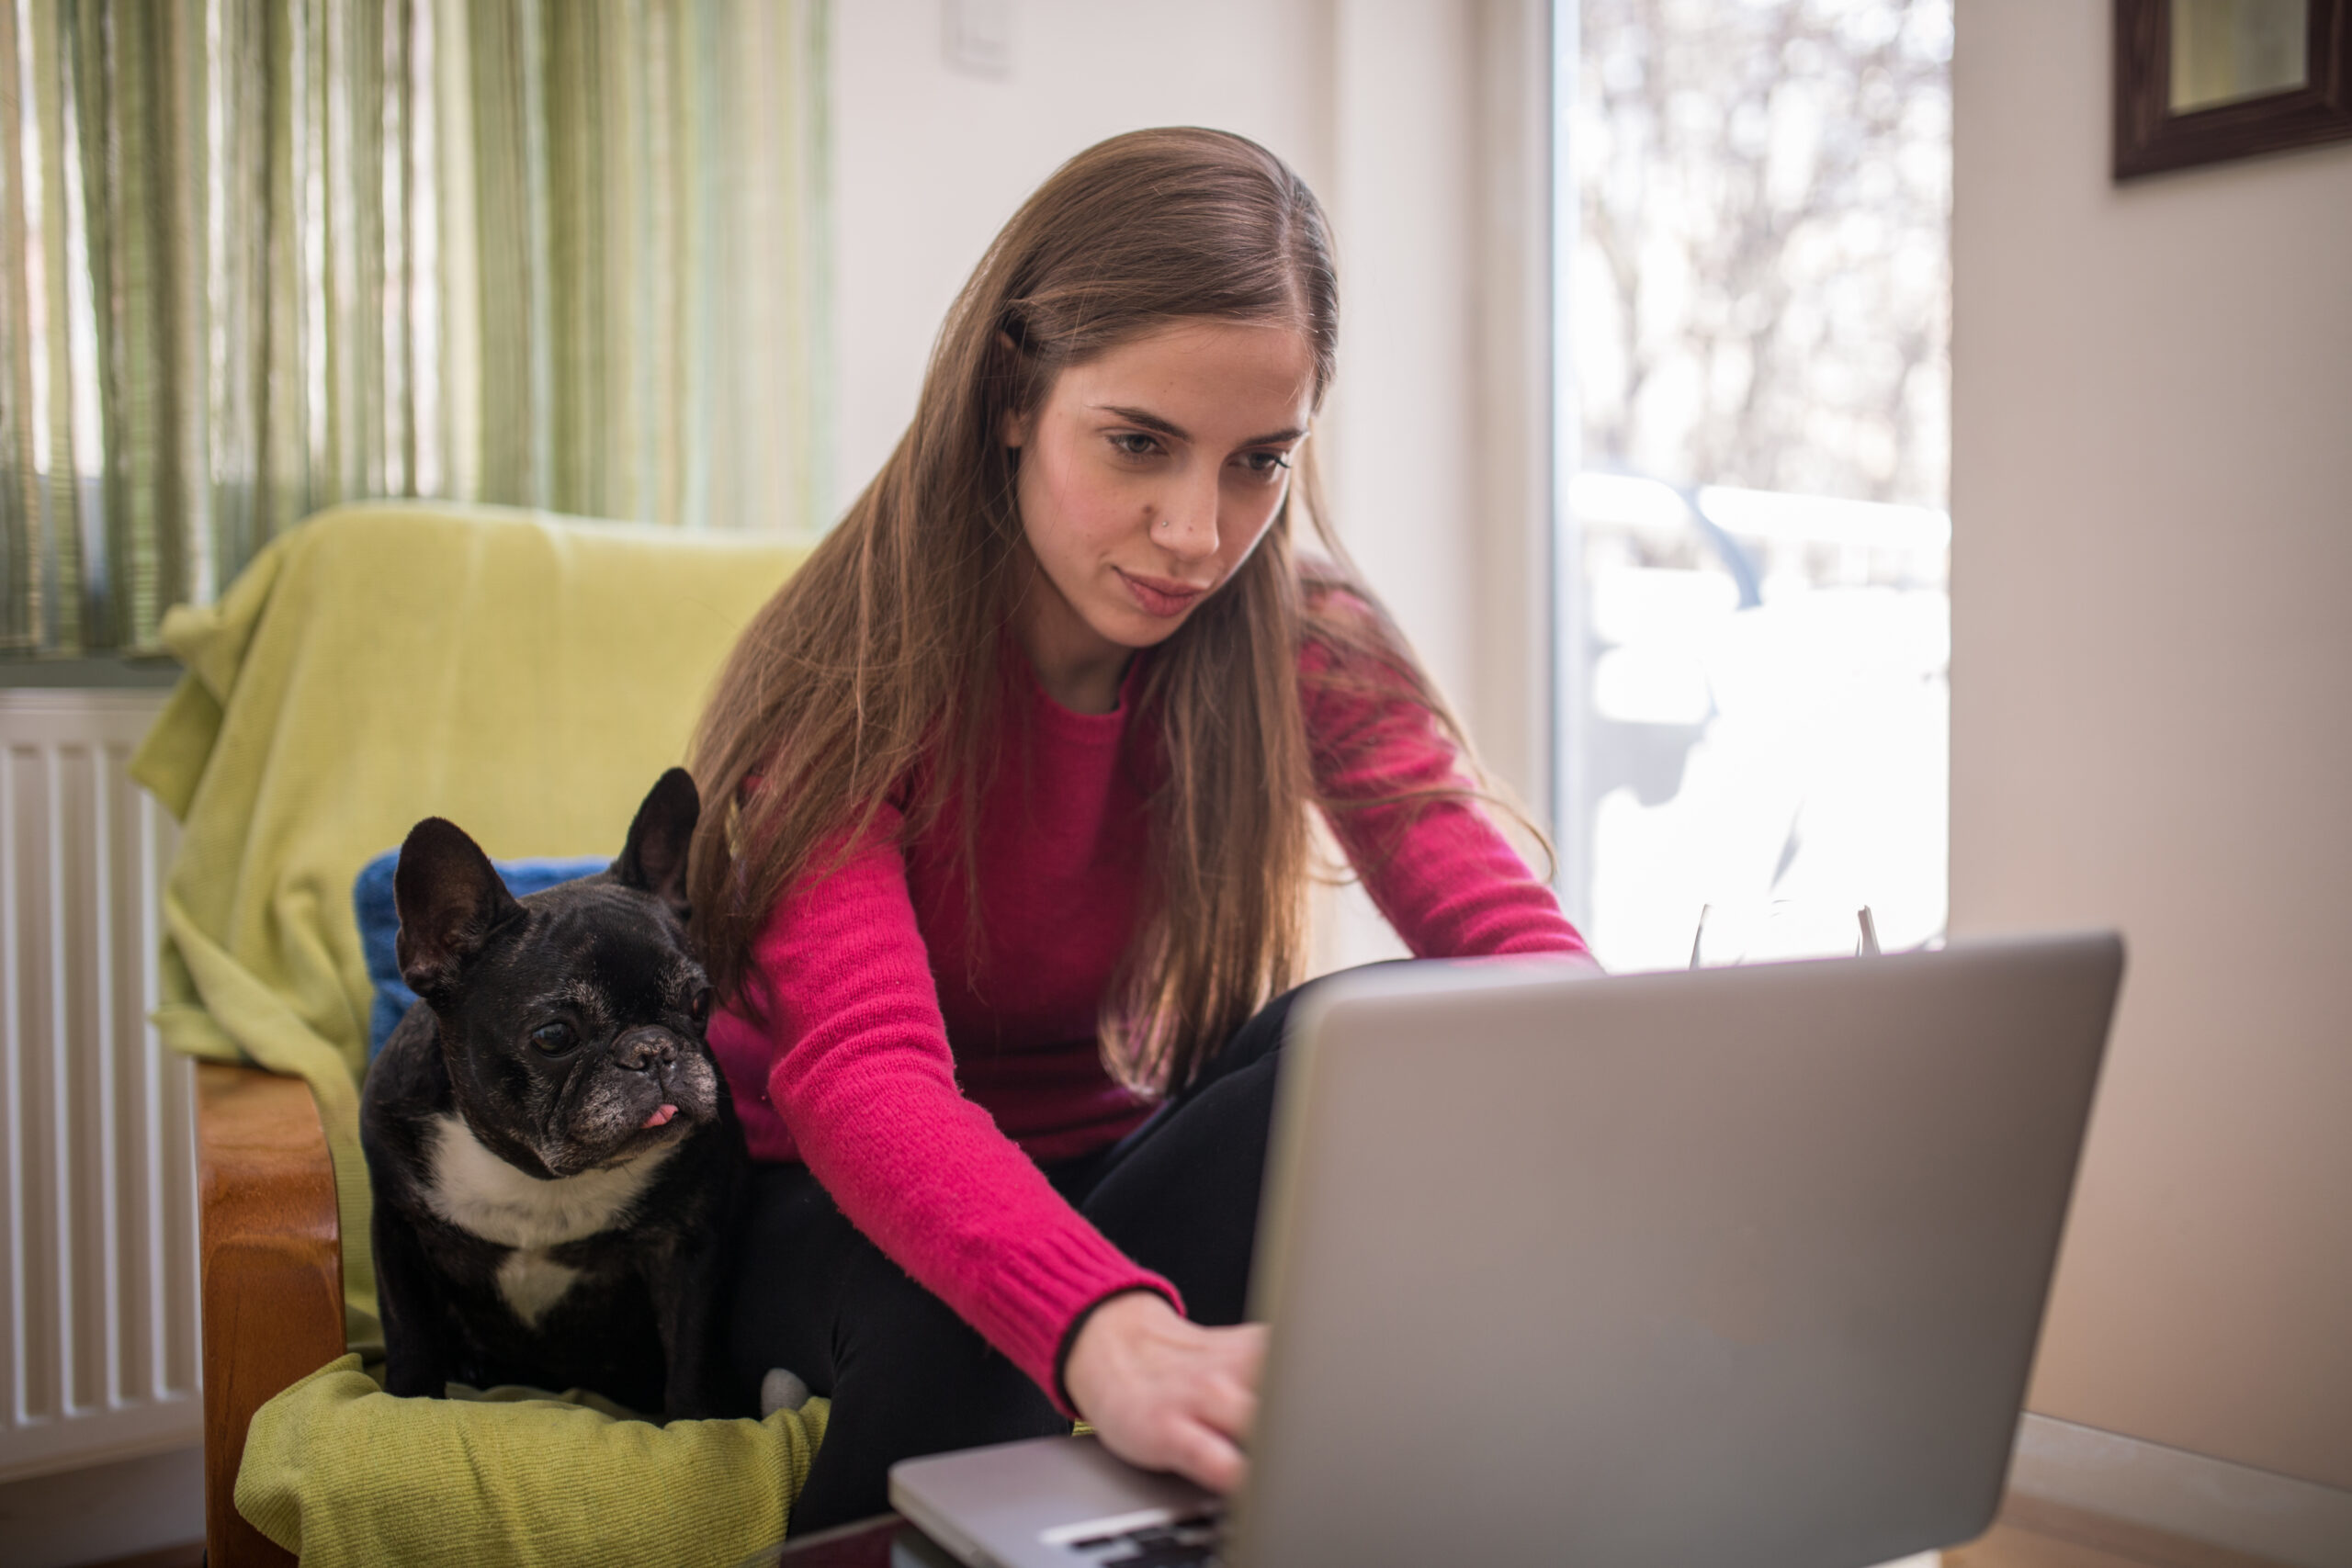 Nainen istuu nojatuolissa ja näpyttää pöydällä olevaa tietokonetta. Koira istuu naisen vieressä ja katsoo myös konetta.